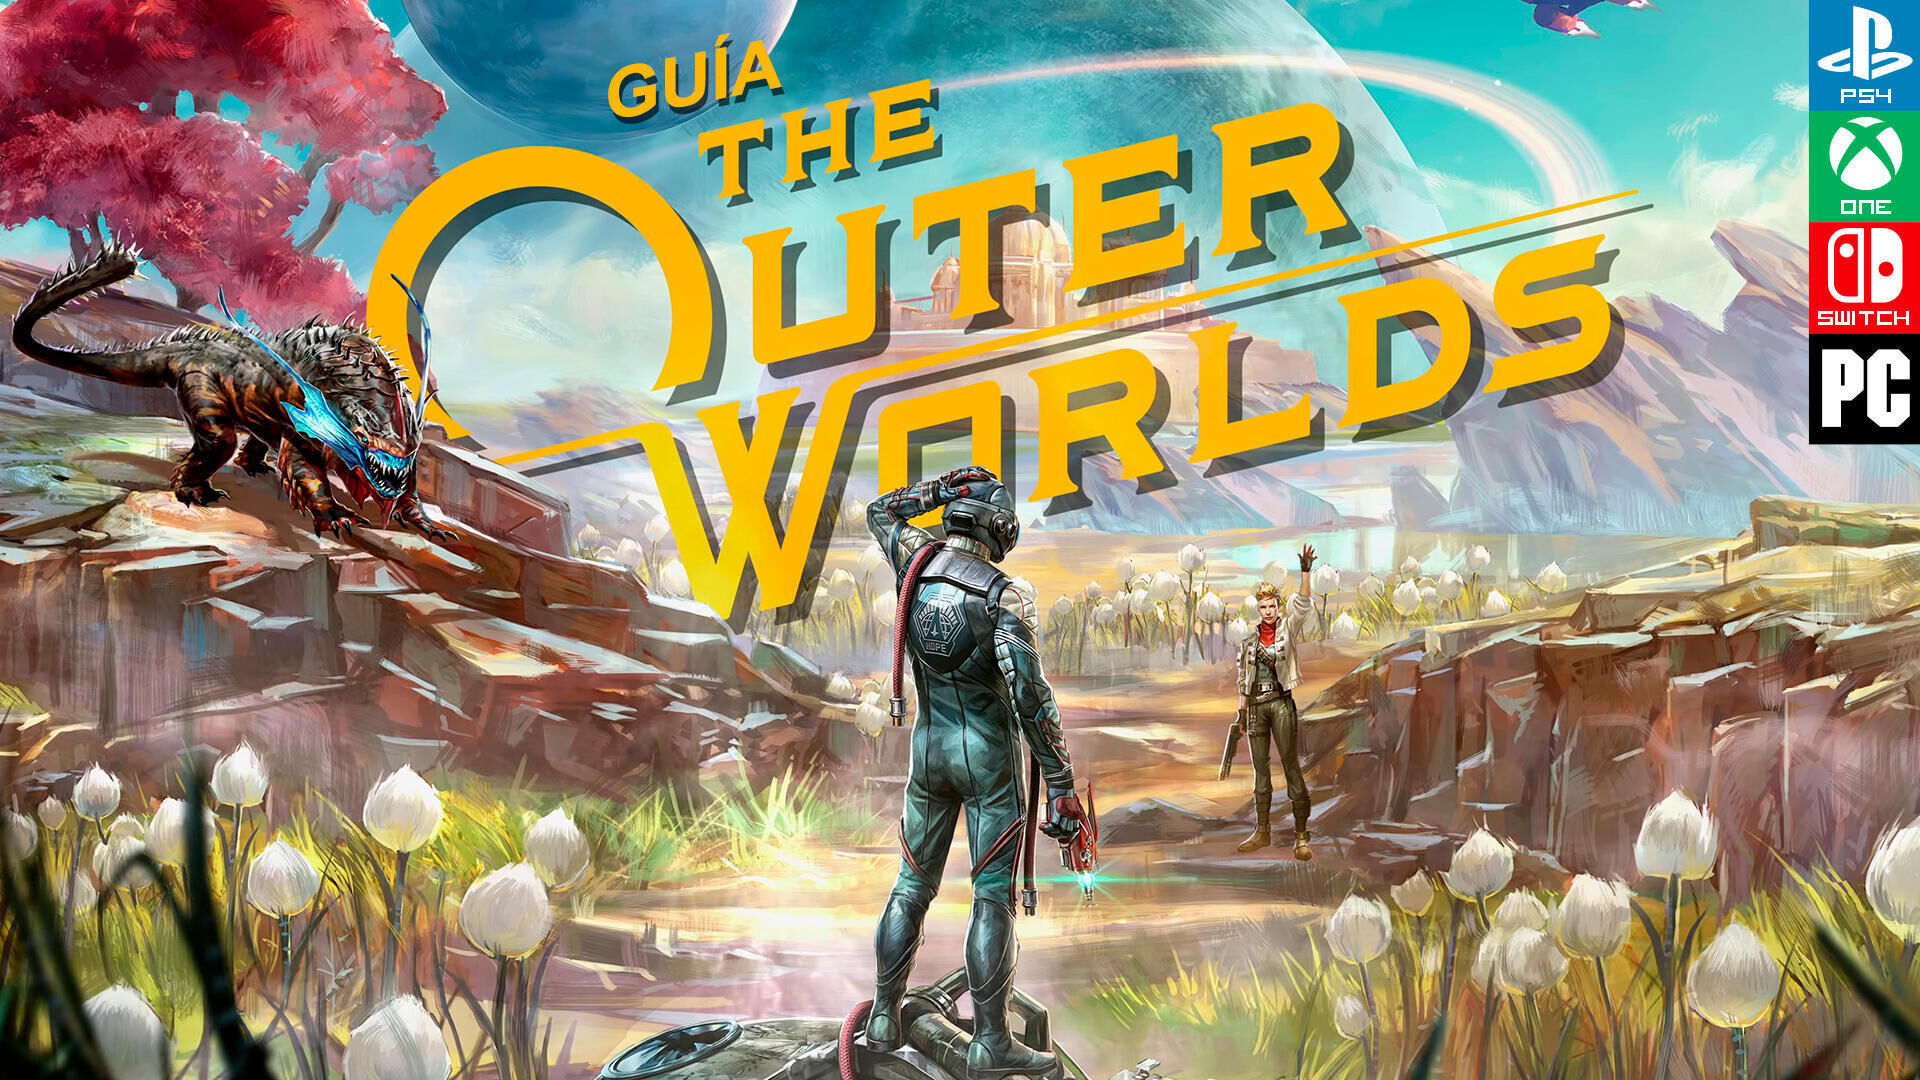 Aquí están los requisitos para jugar The Outer Worlds en PC